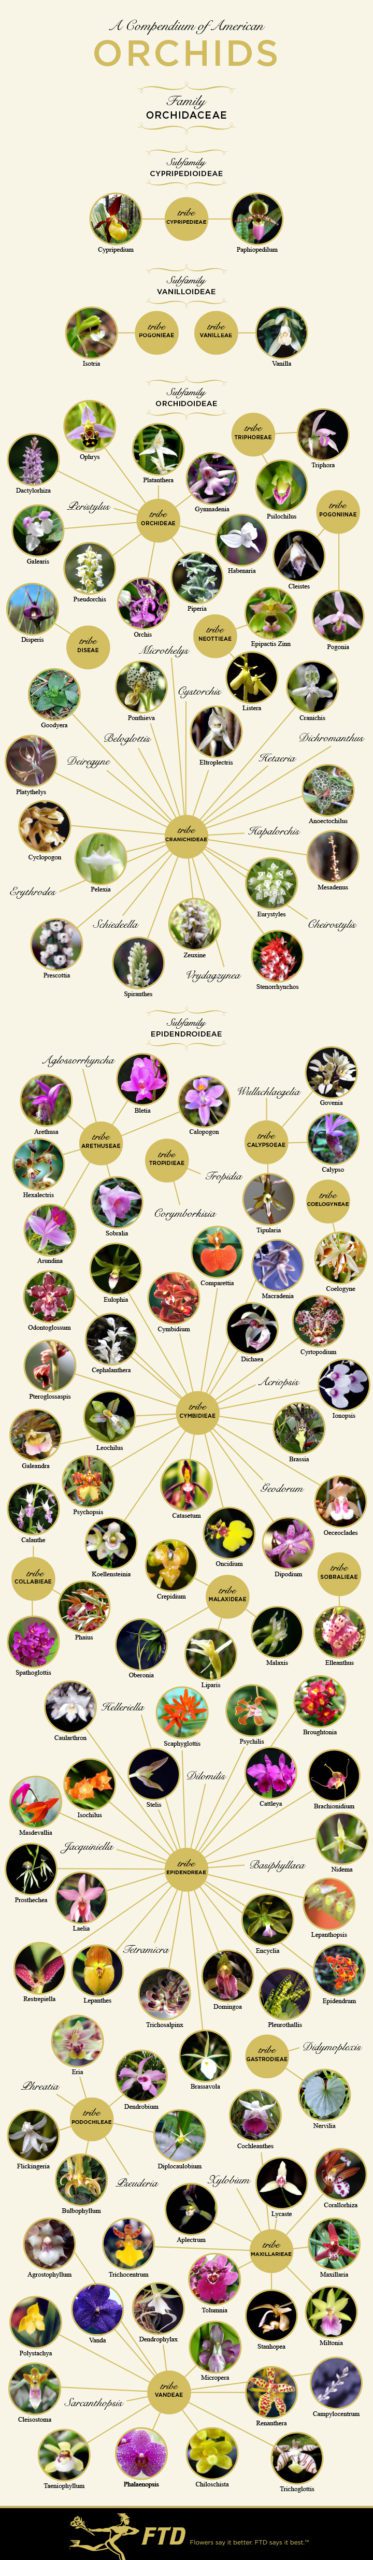 compendium of orchids